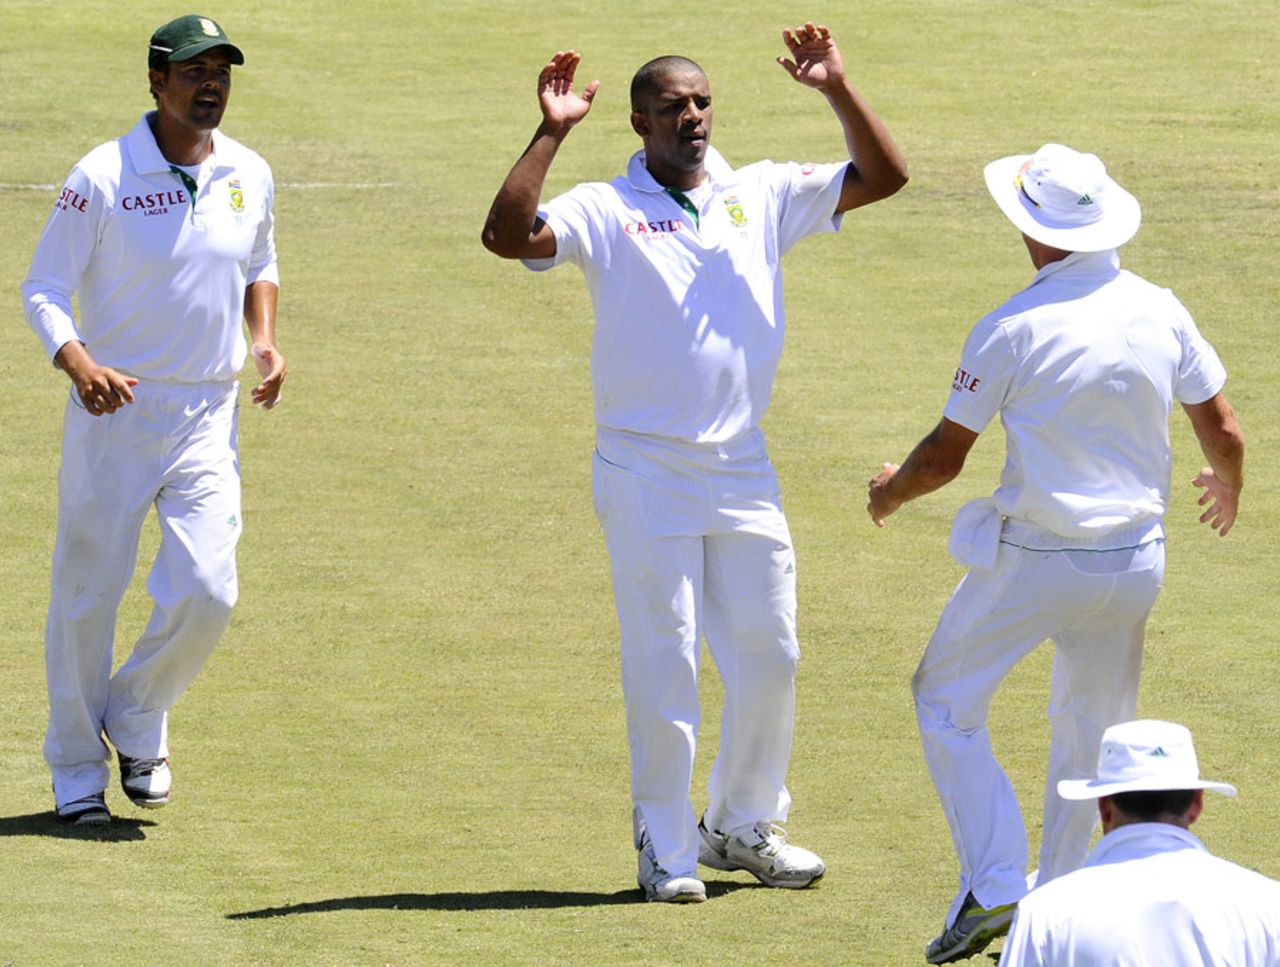 Vernon Philander celebrates the dismissal of Tillakaratne Dilshan, South Africa v Sri Lanka, 3rd Test, Cape Town, January, 5, 2012